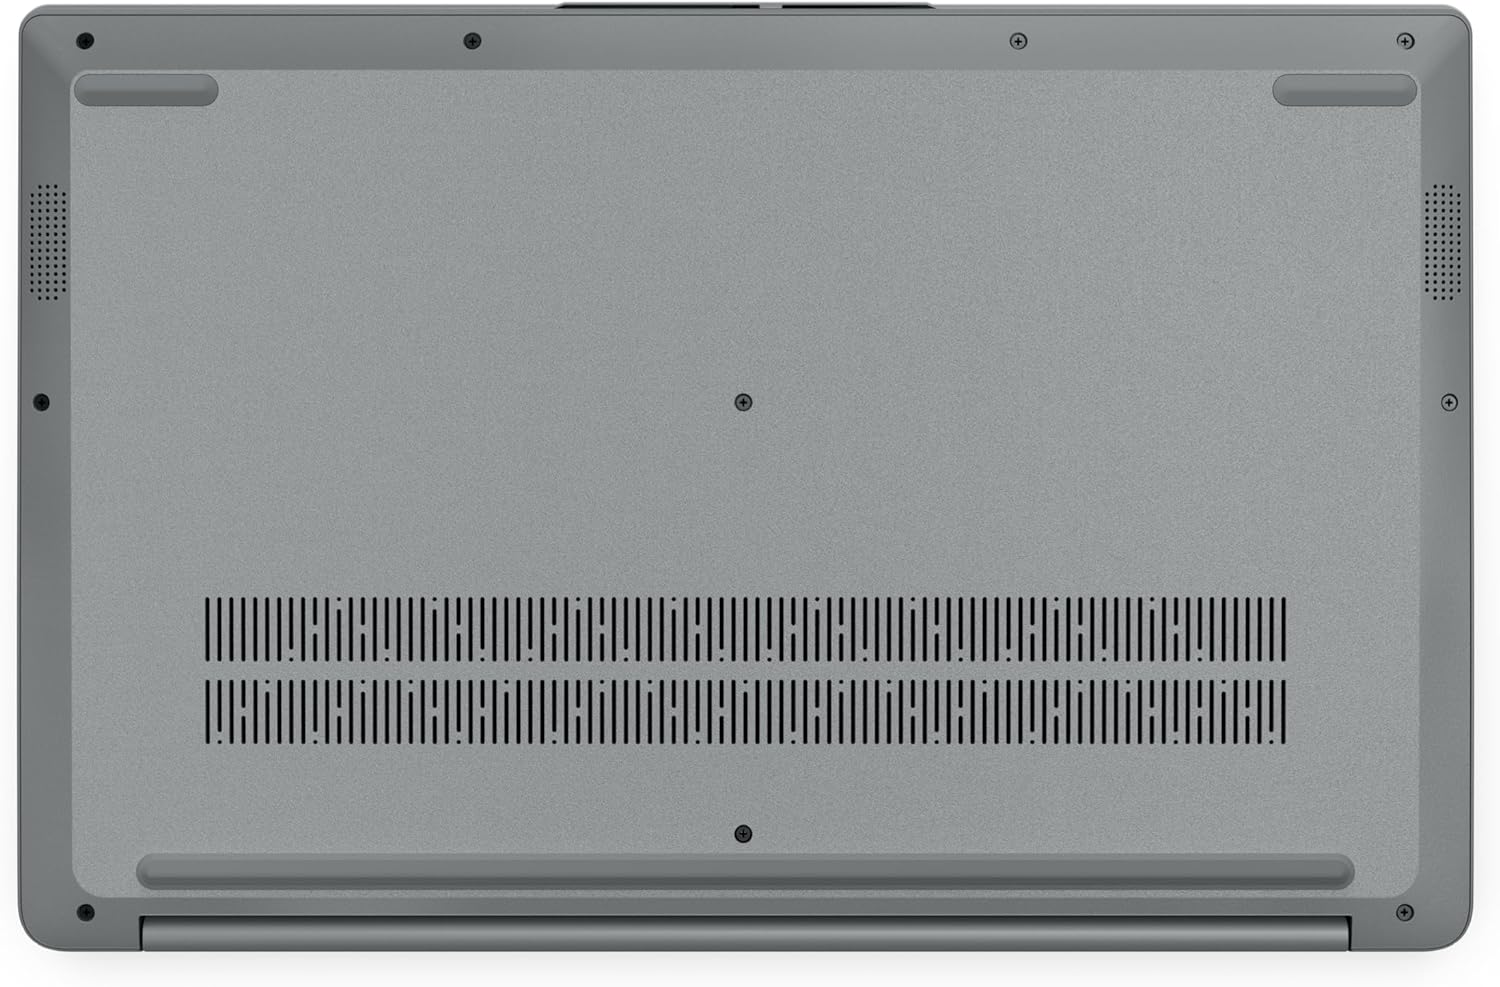 Lenovo IdeaPad 1 – AMD Ryzen5-5500U – 15.6 Full HD (1920x1080) – 8GB Memory – 512GB SSD Storage – Windows 11 - Cloud Grey – (2023 Model)